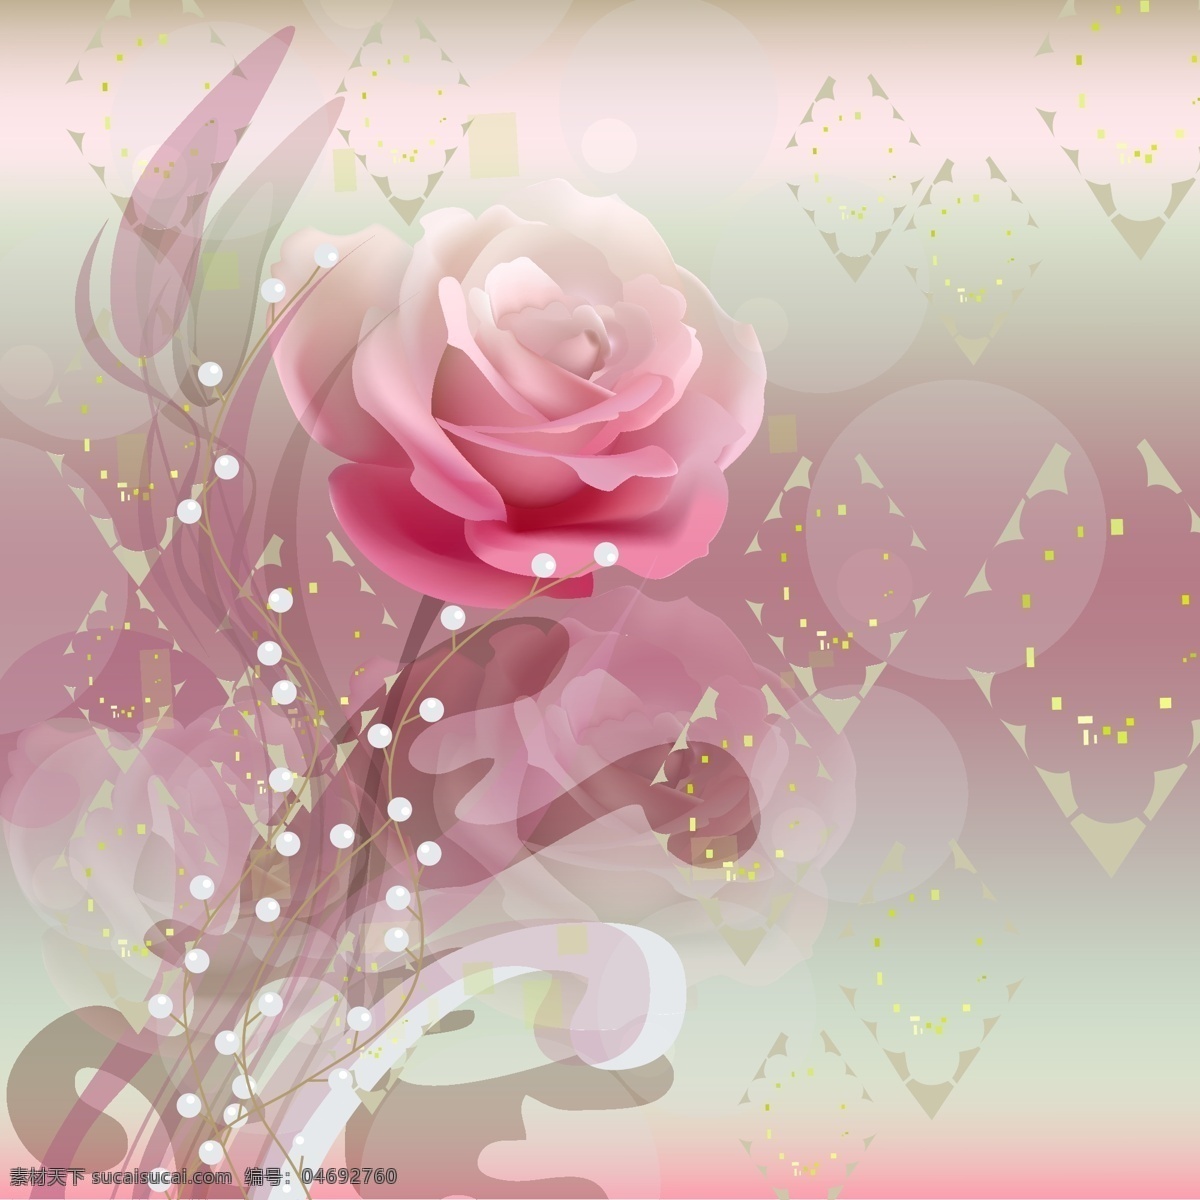 粉色 浪漫 玫瑰 背景 鲜花 花草 生物世界 矢量